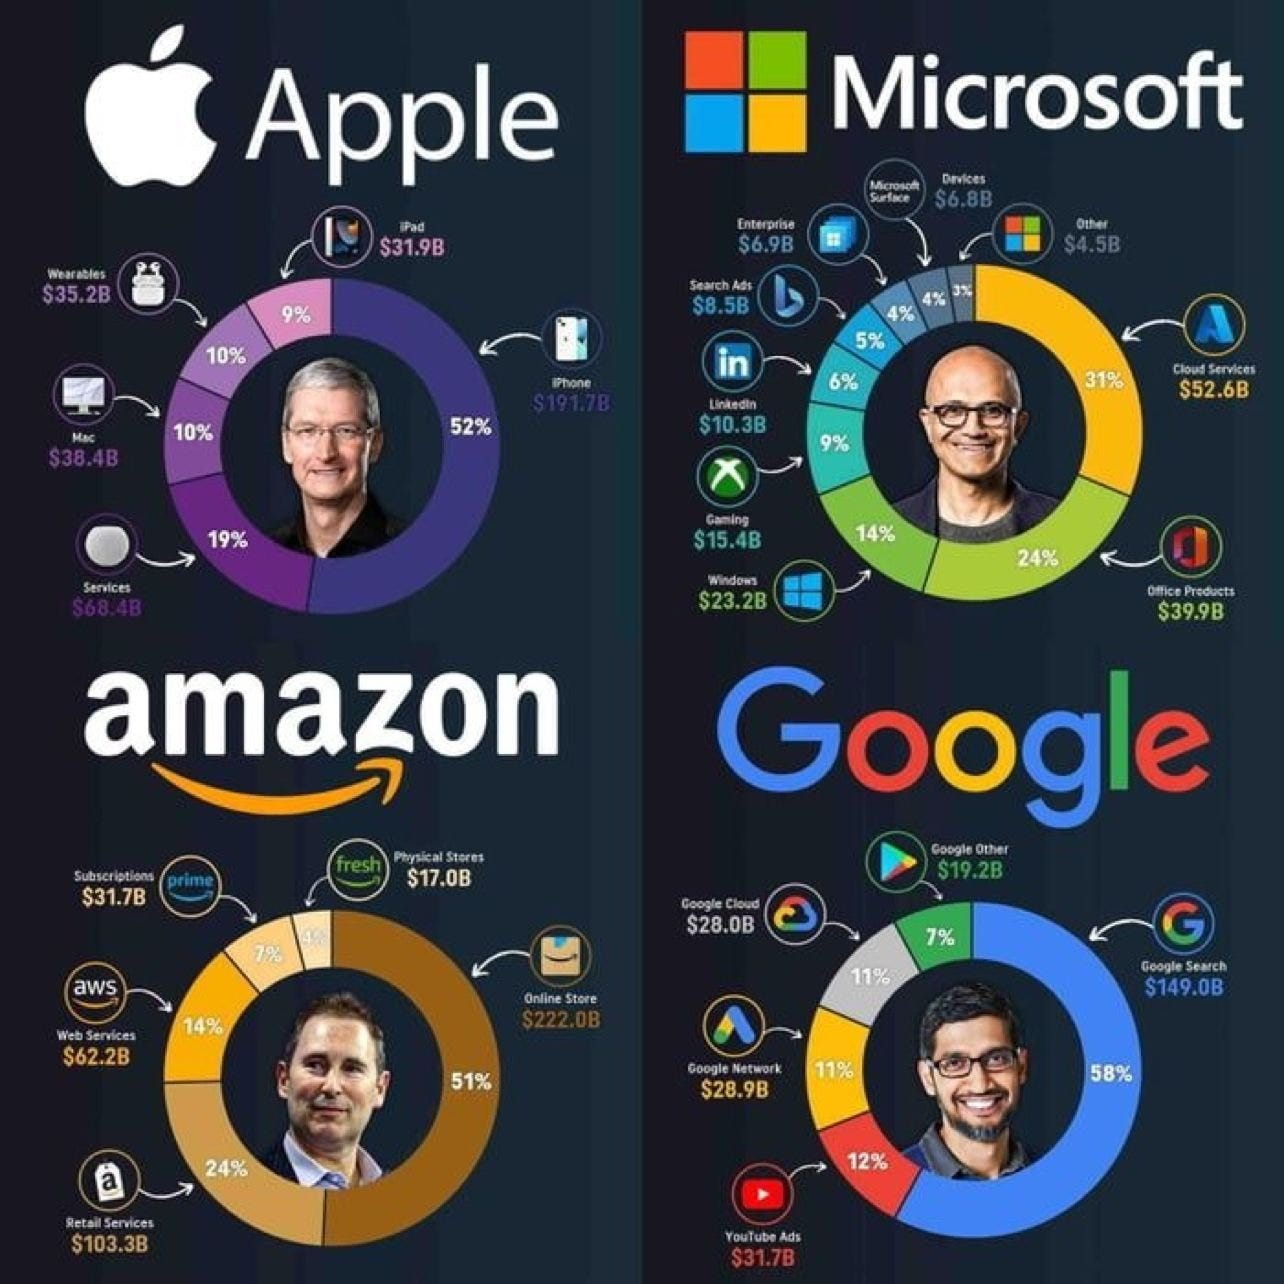 ¿Cómo son los ingresos en las grandes empresas de tecnología? #Apple #MIcrosoft #Amazon #Google